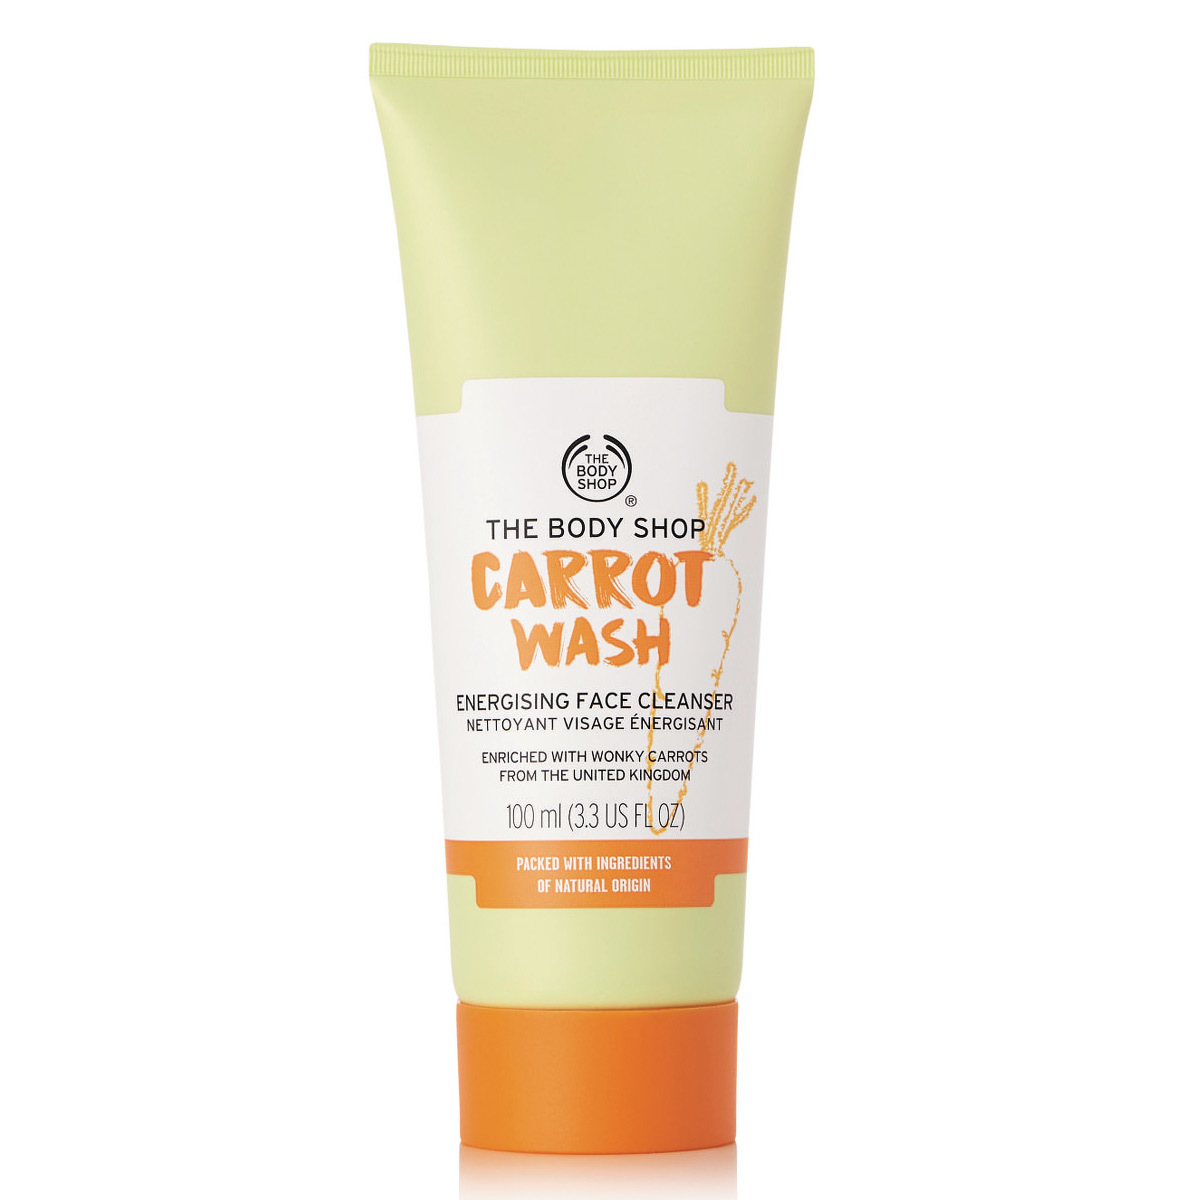 Limpiador facial revitalizante Carrot Wash de The Body Shop.